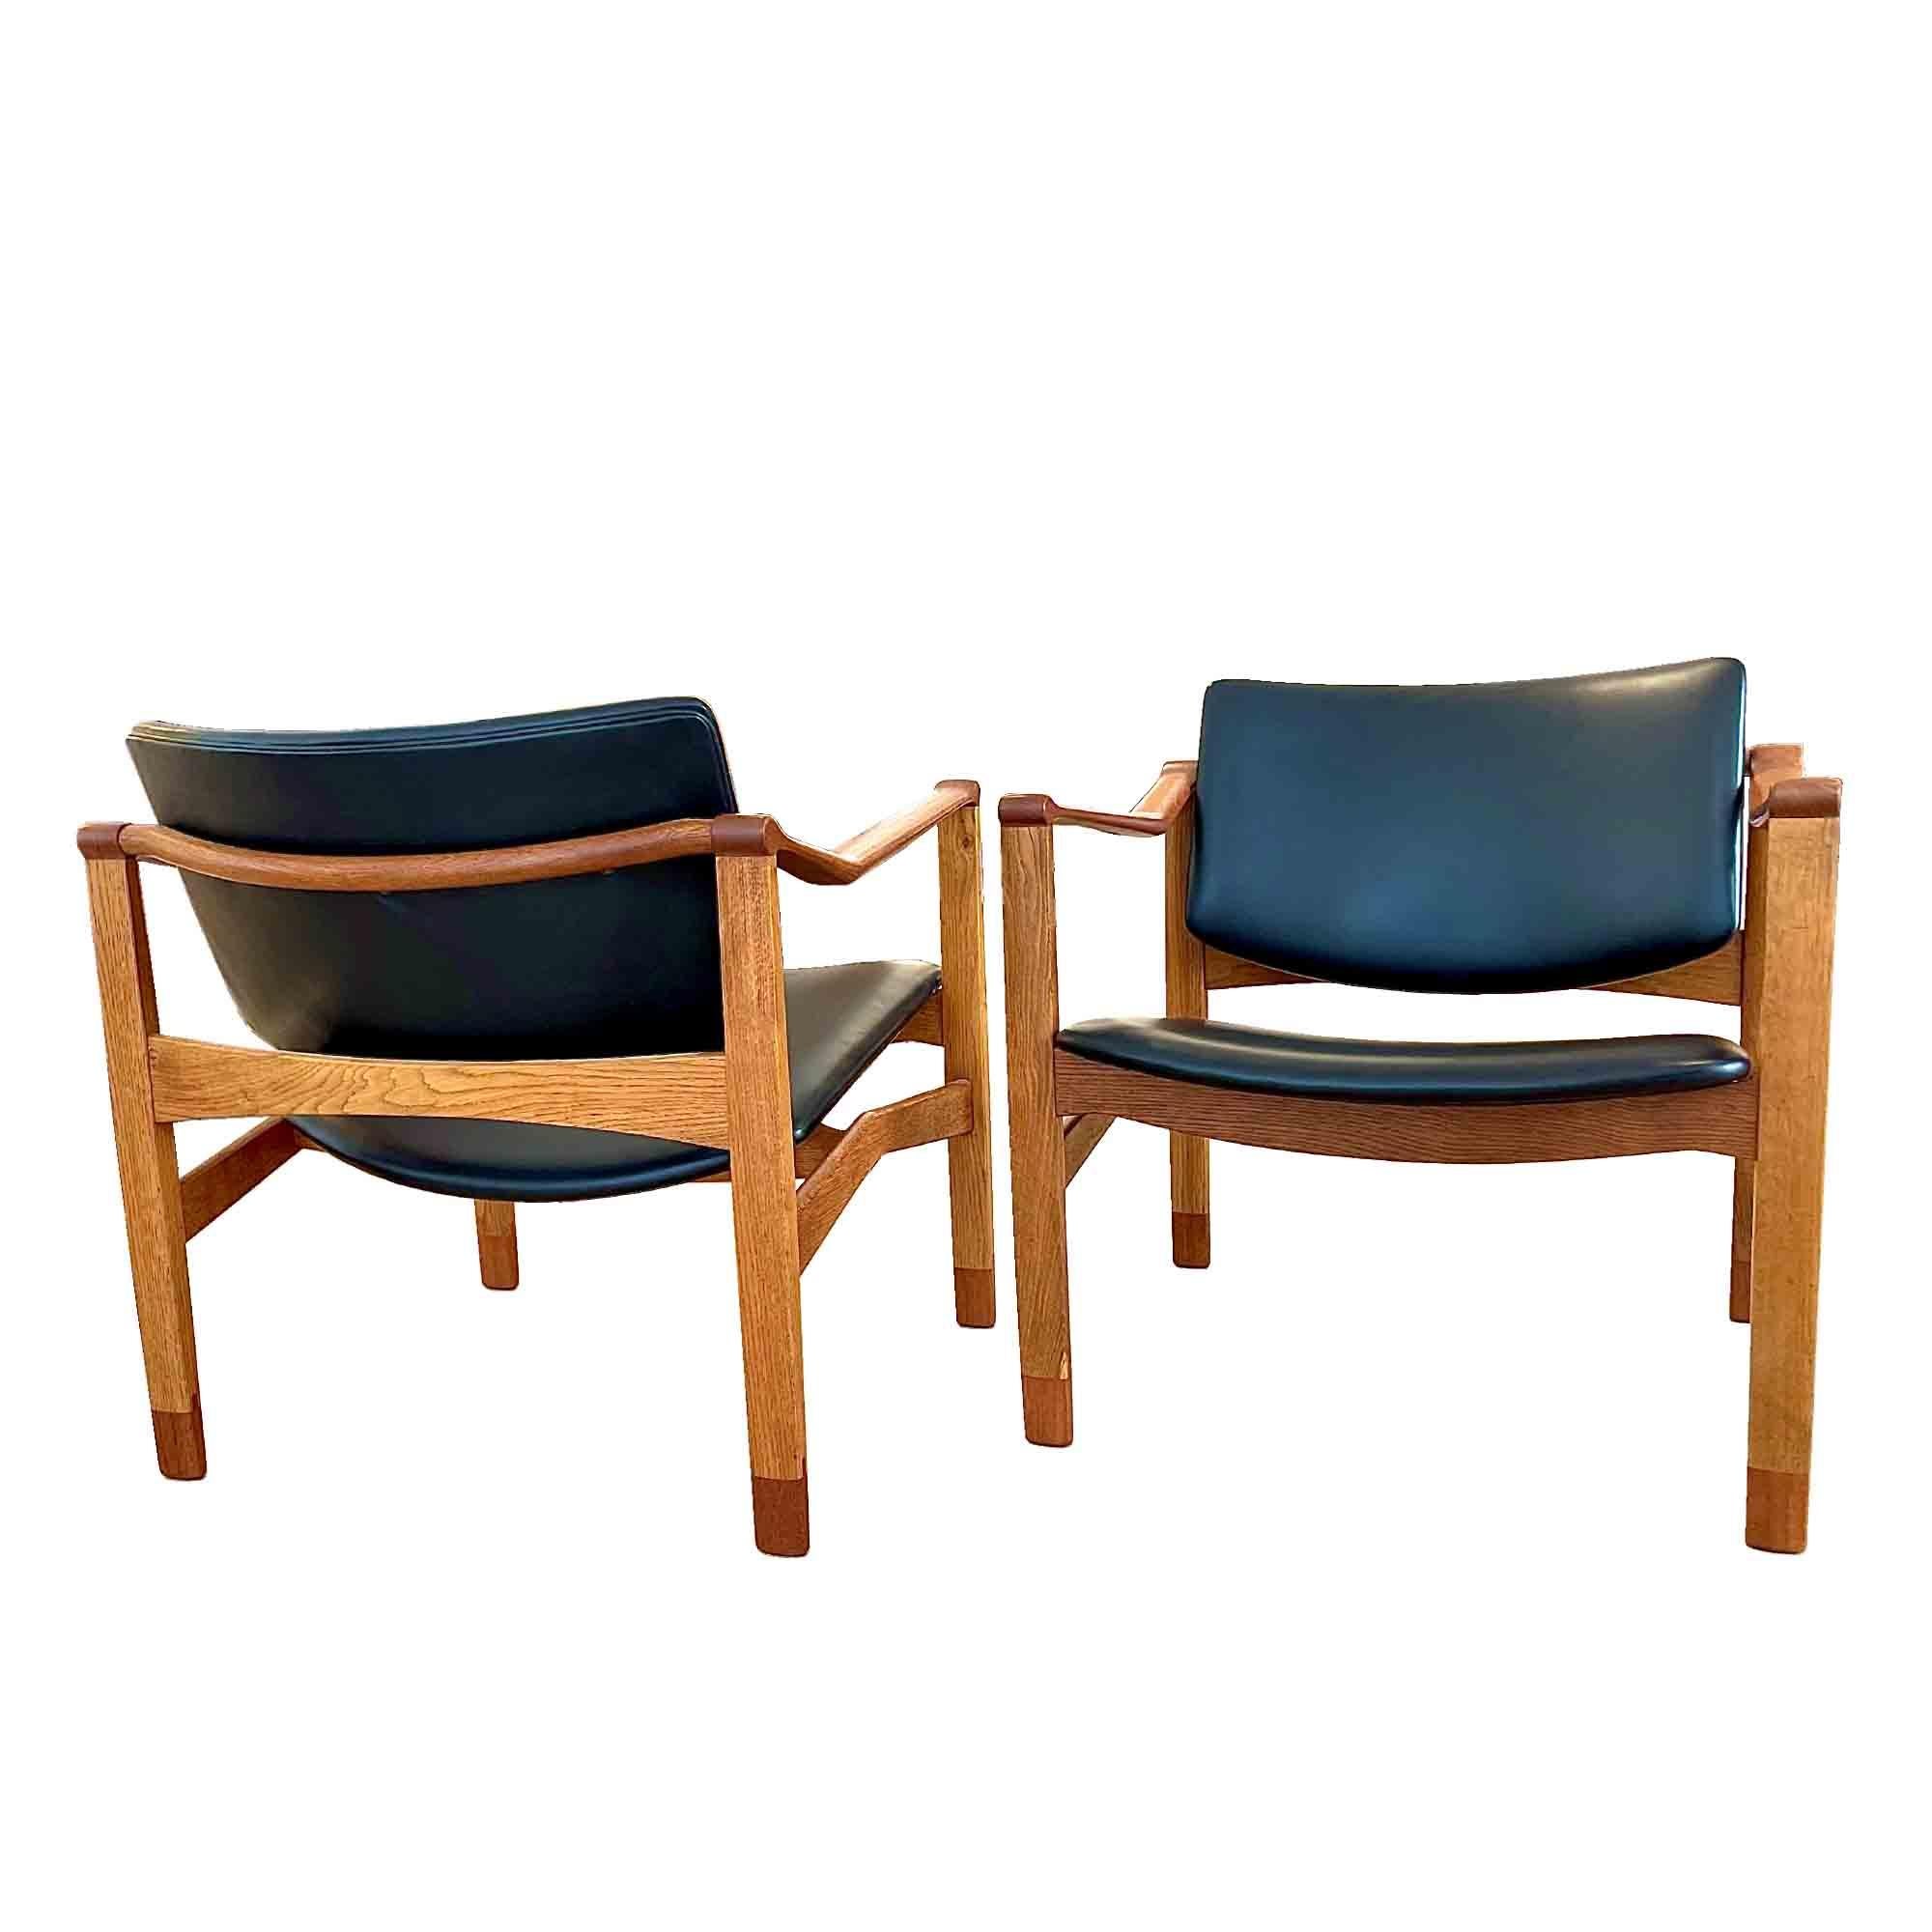 William Watting était un designer de meubles américain, qui, installé au Danemark dans les années 50’s, produit pour sa propre entreprise William Watting Furniture. Ses créations se caractérisent par la simplicité, et la fonctionnalité de leurs